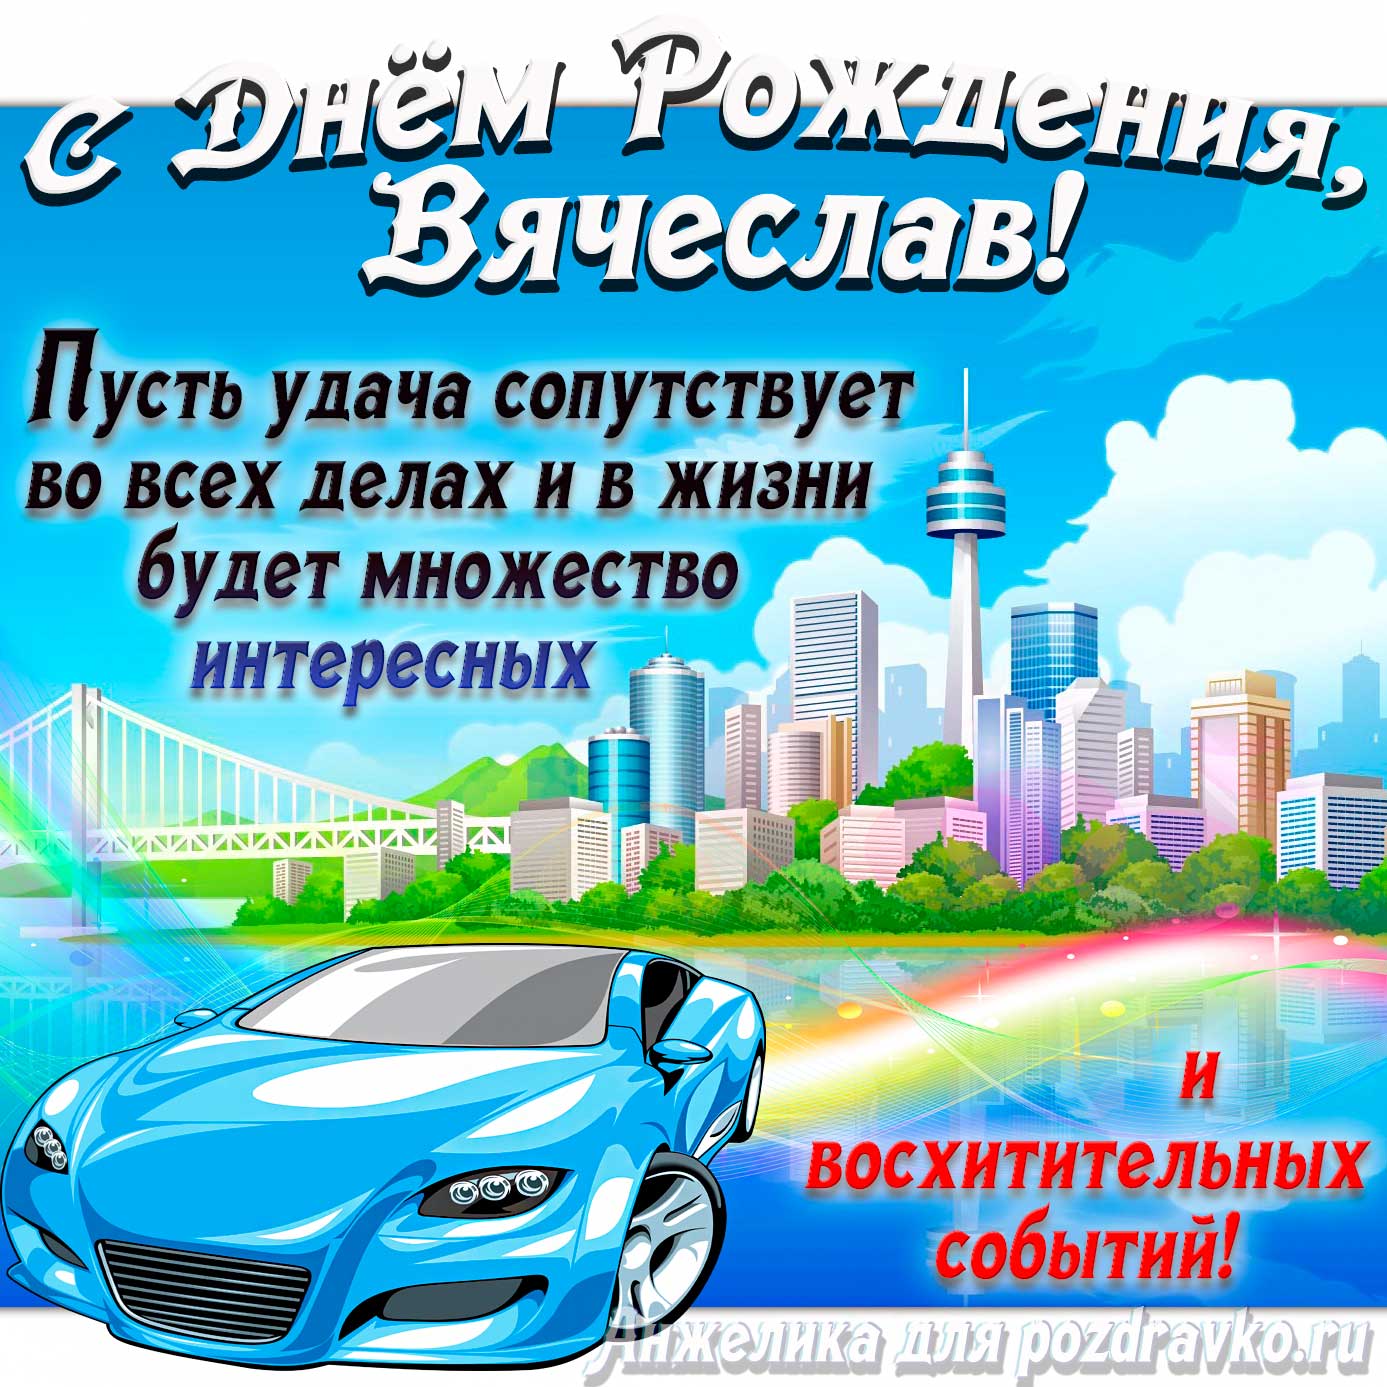 Открытка - с Днём Рождения Вячеслав с голубой машиной и пожеланием. Скачать бесплатно или отправить картинку.